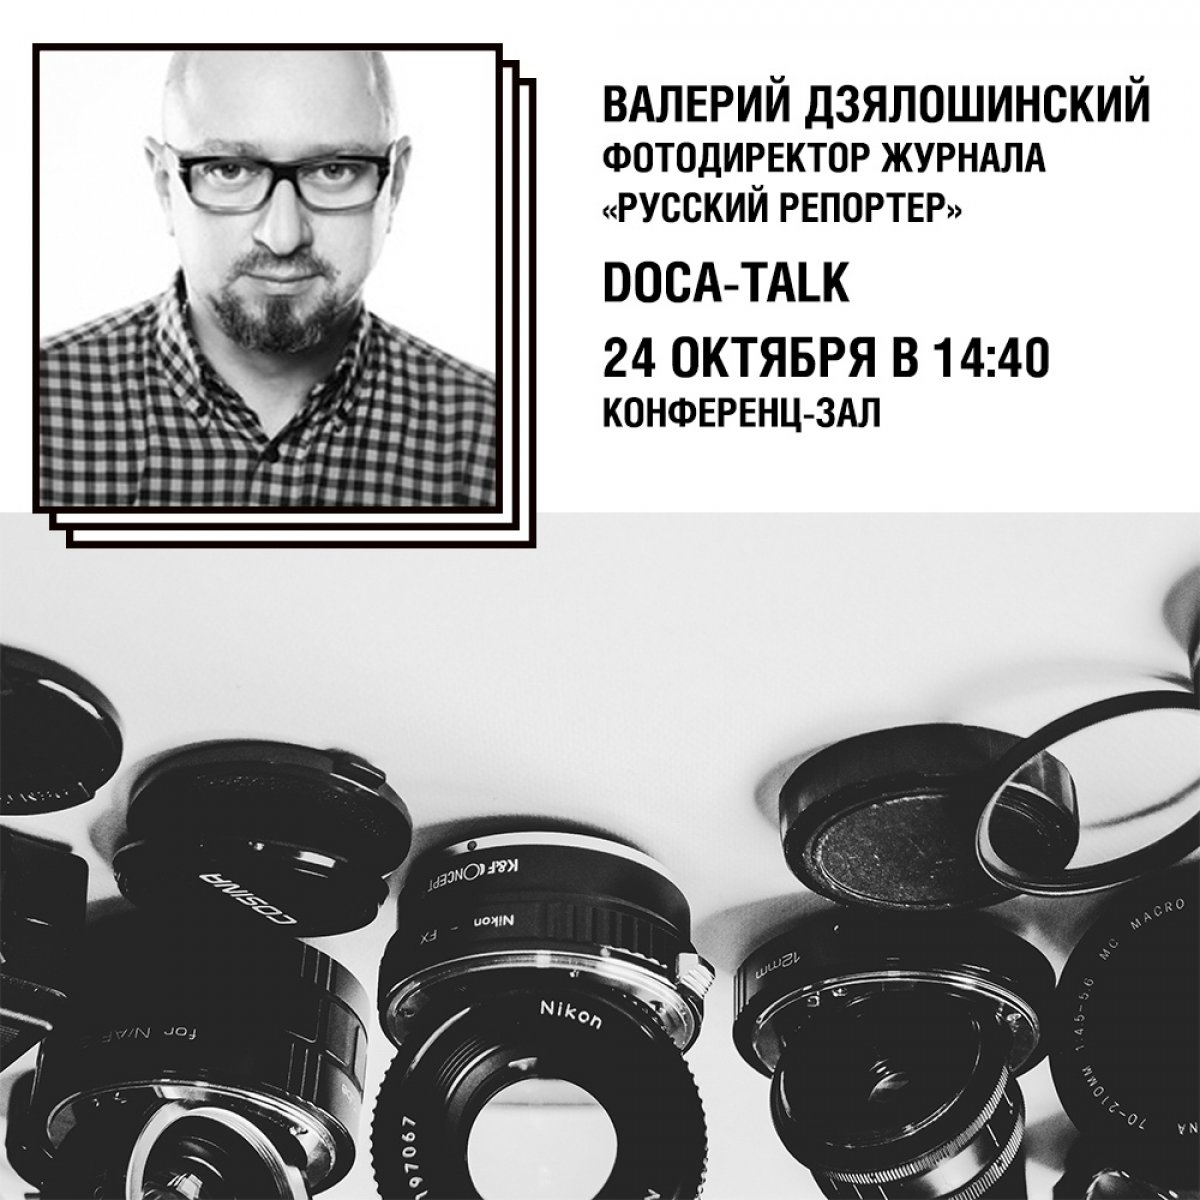 24 октября в рамках цикла лекций DOCA-talk состоится встреча с фотографом Валерием Дзялошинским.